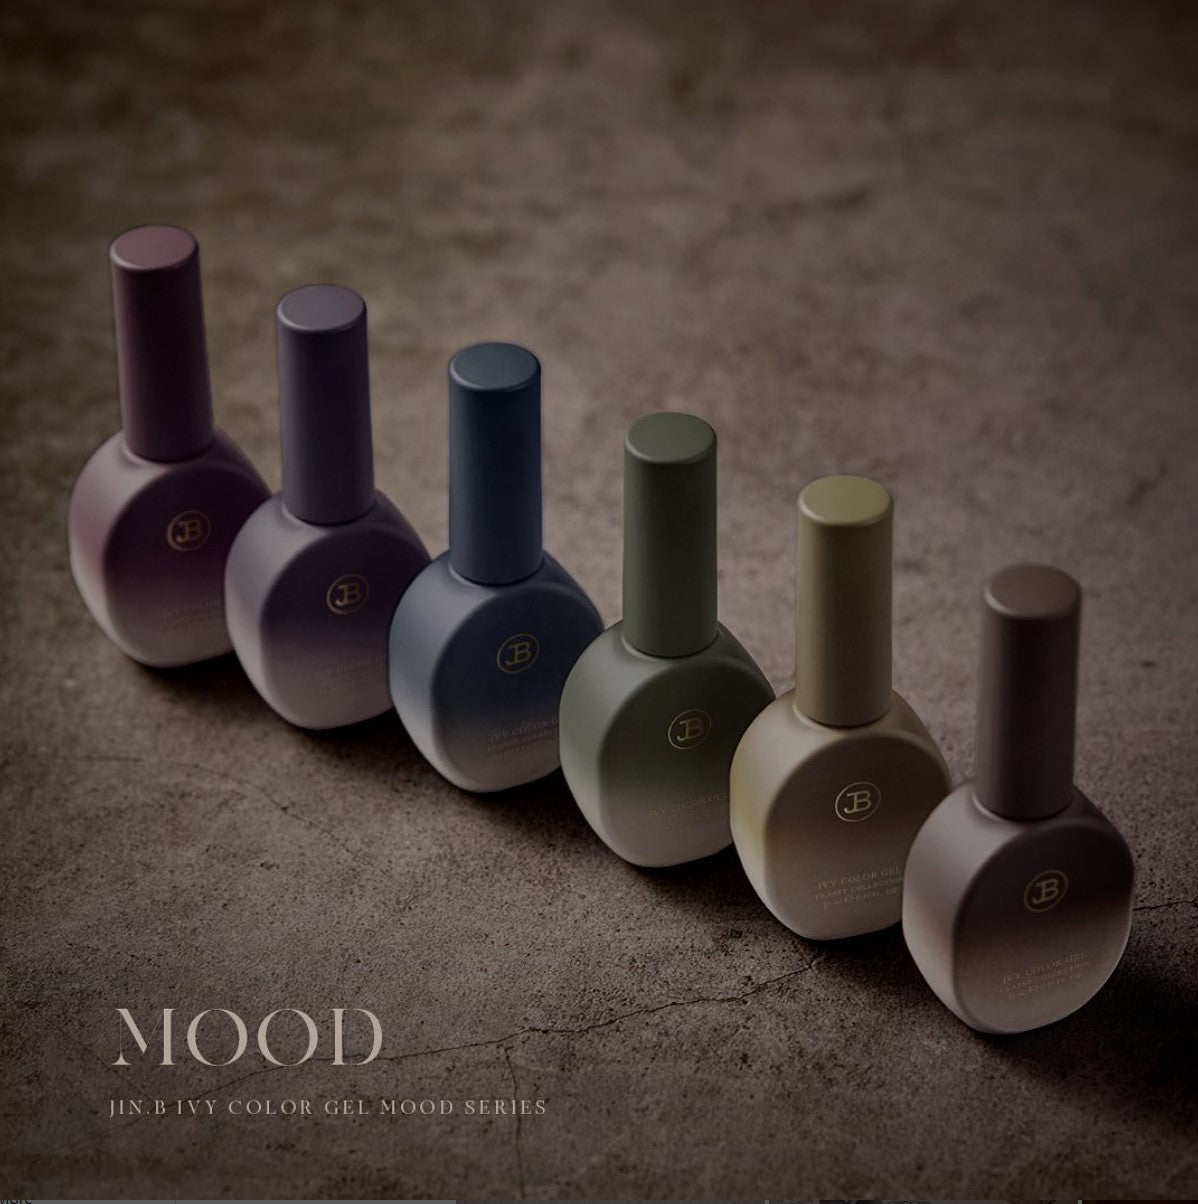 Jin.B Mood Colletion - 6 Syrup Color Set